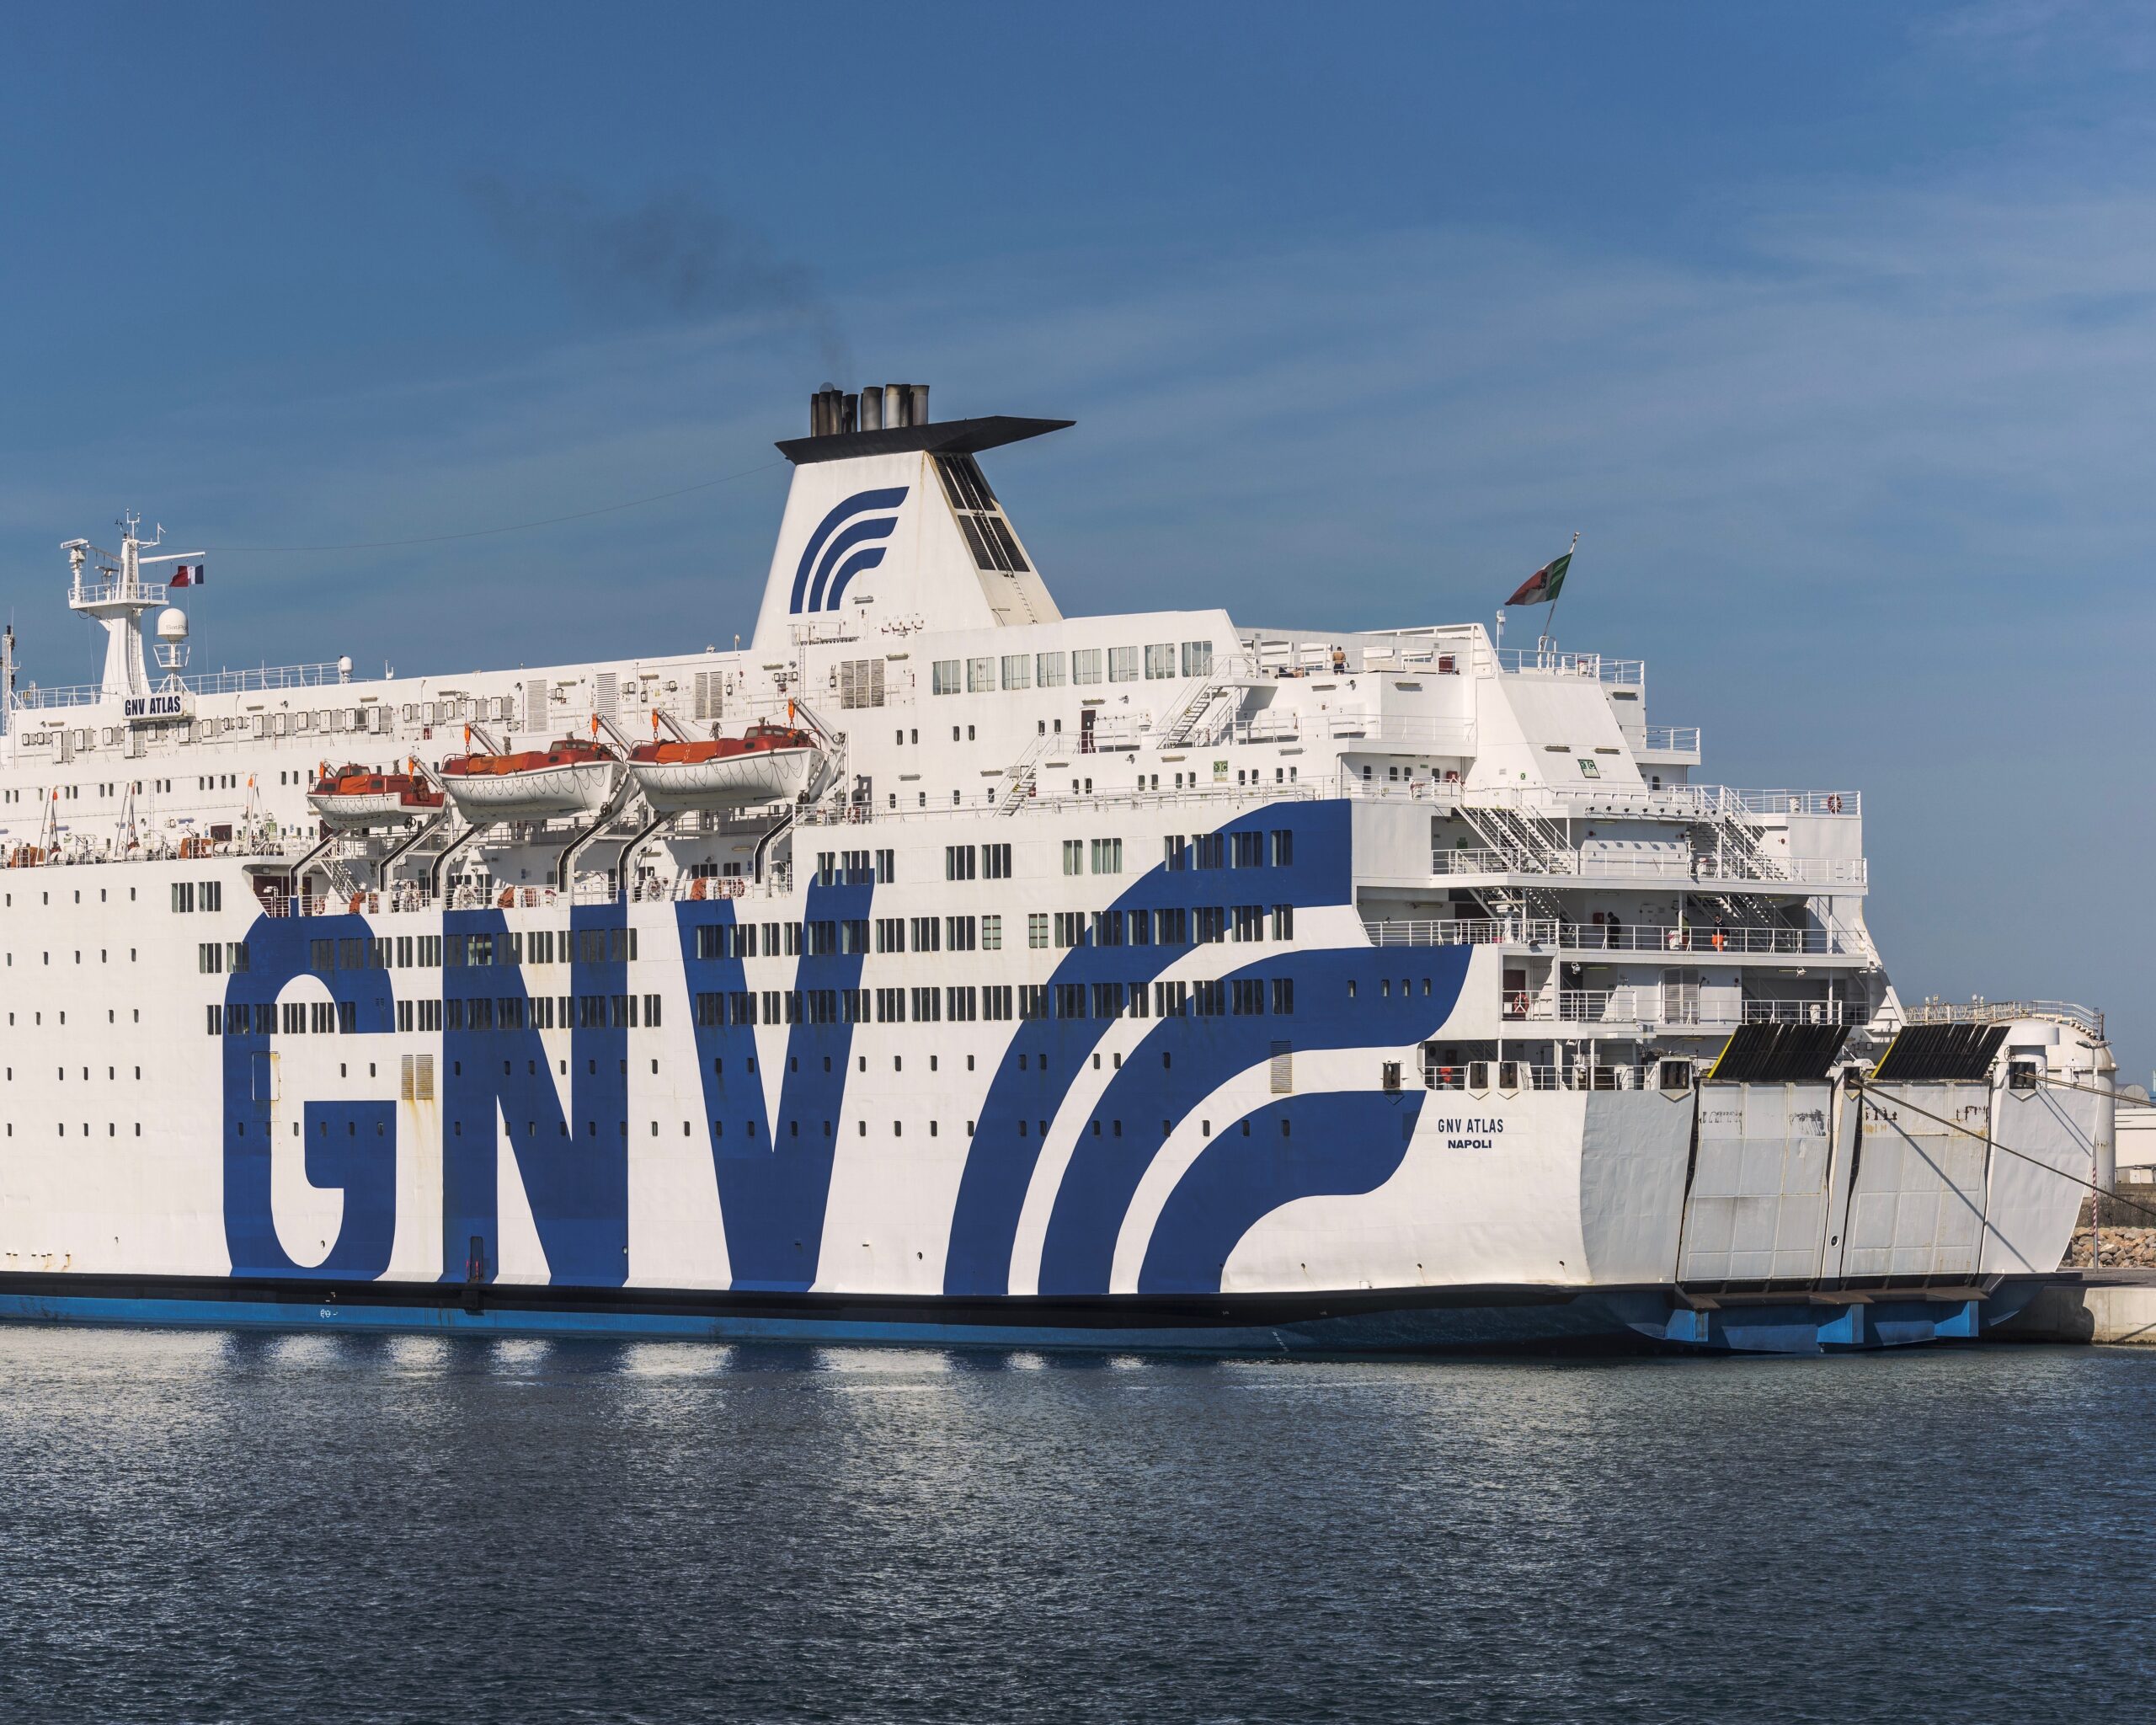 Mare: Grandi Navi Veloci firma con i cantieri GSI per costruire 2 traghetti a basso impatto ambientale